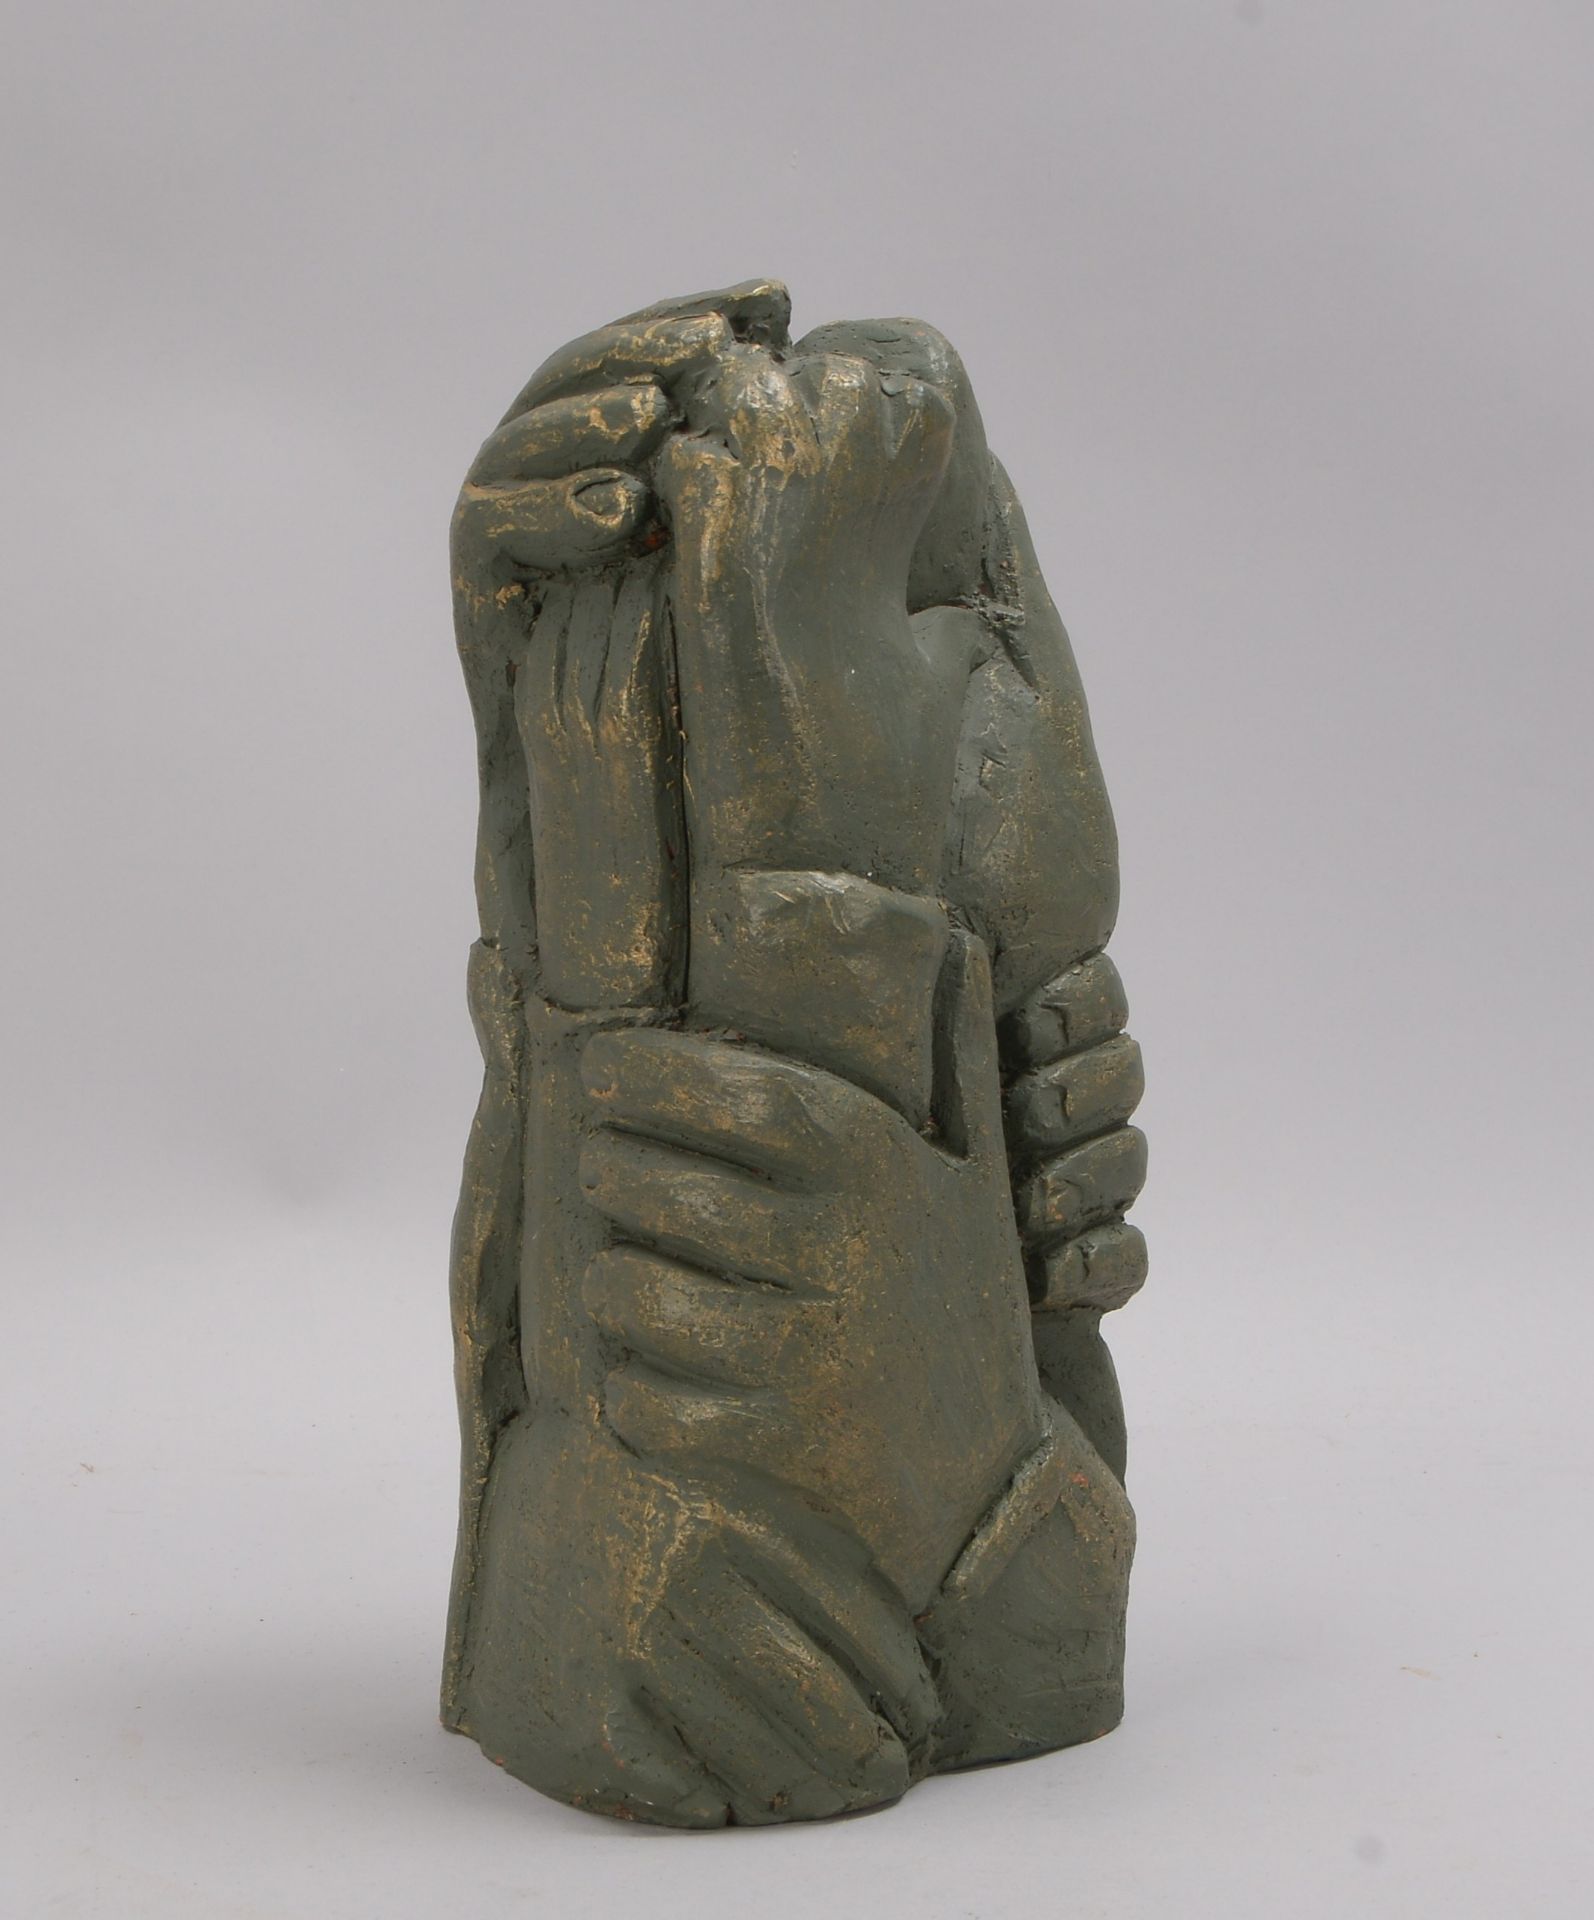 Keramikfigur (Italien), 'Gestaffelte Hände', rotbrauner Scherben, grün und bronzefarben staffiert, u